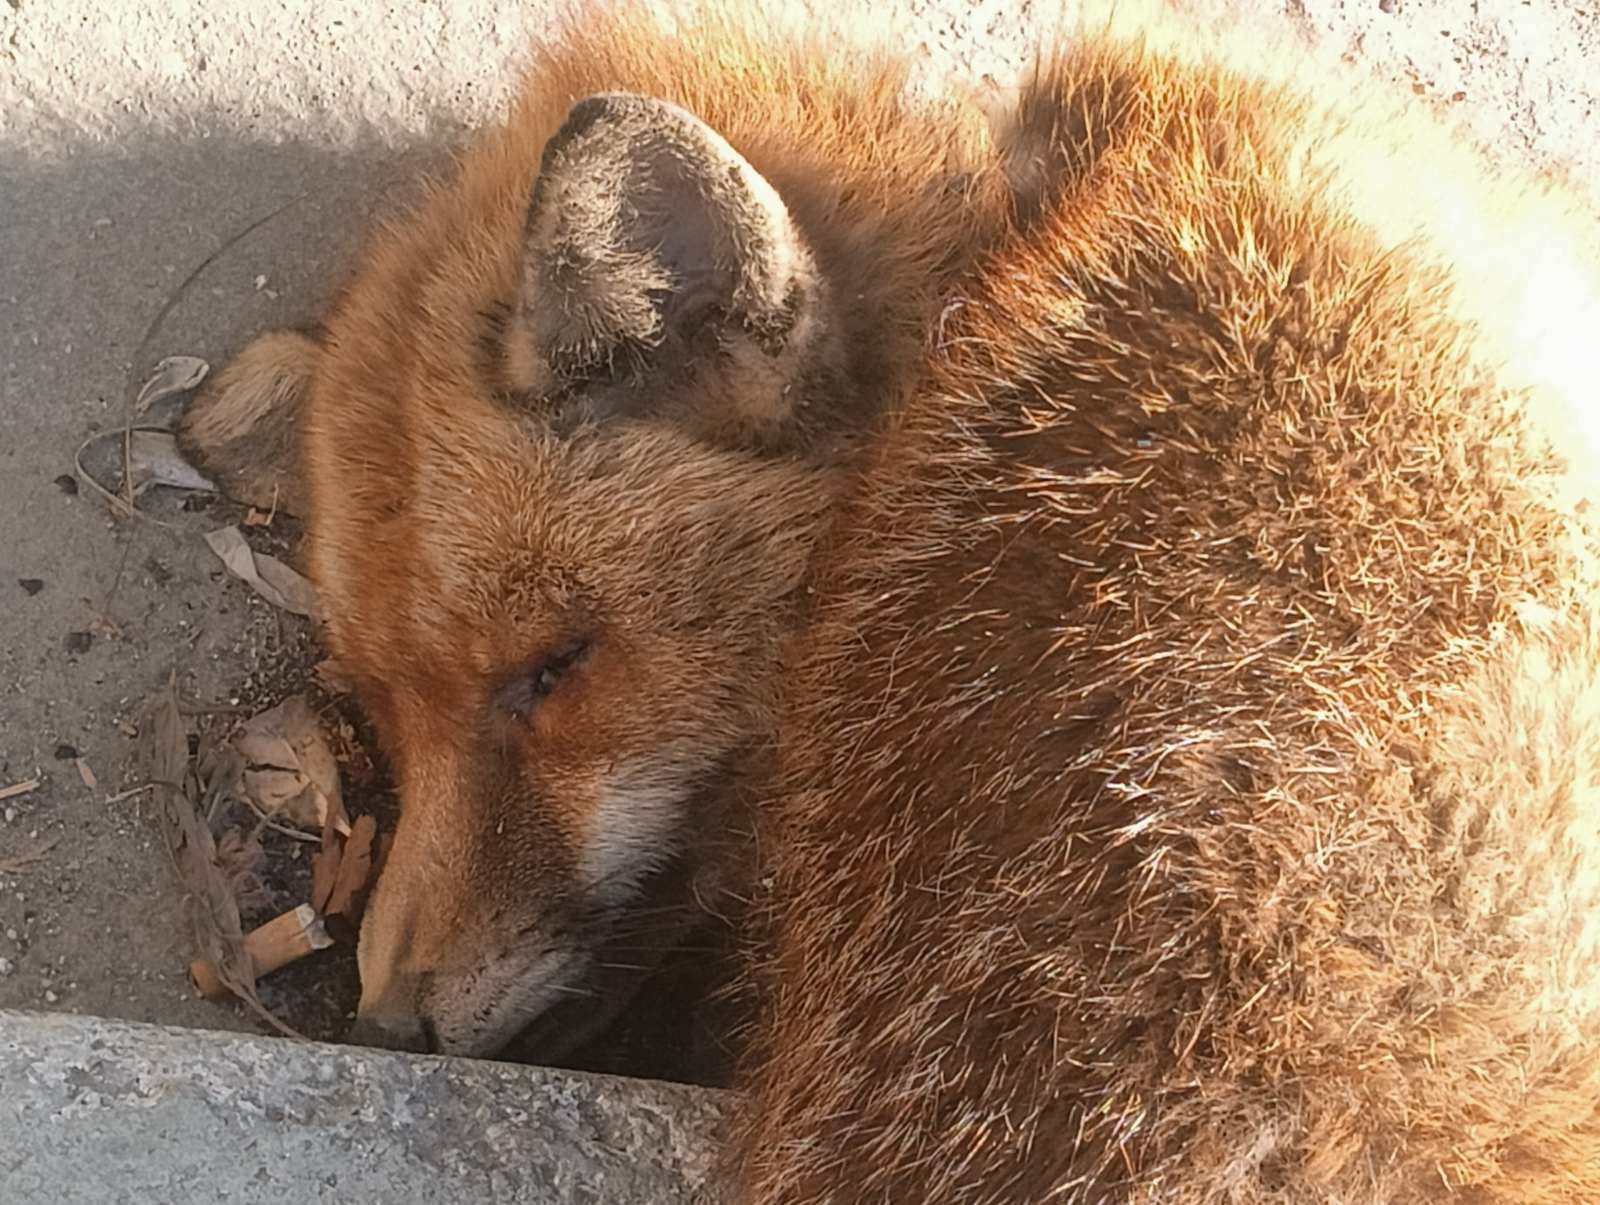 Κτηνωδία: Νεκρή αλεπού με κομμένη ουρά και τραύμα στον λαιμό – Εντοπίστηκε πεταμένη σε κάδο απορριμμάτων